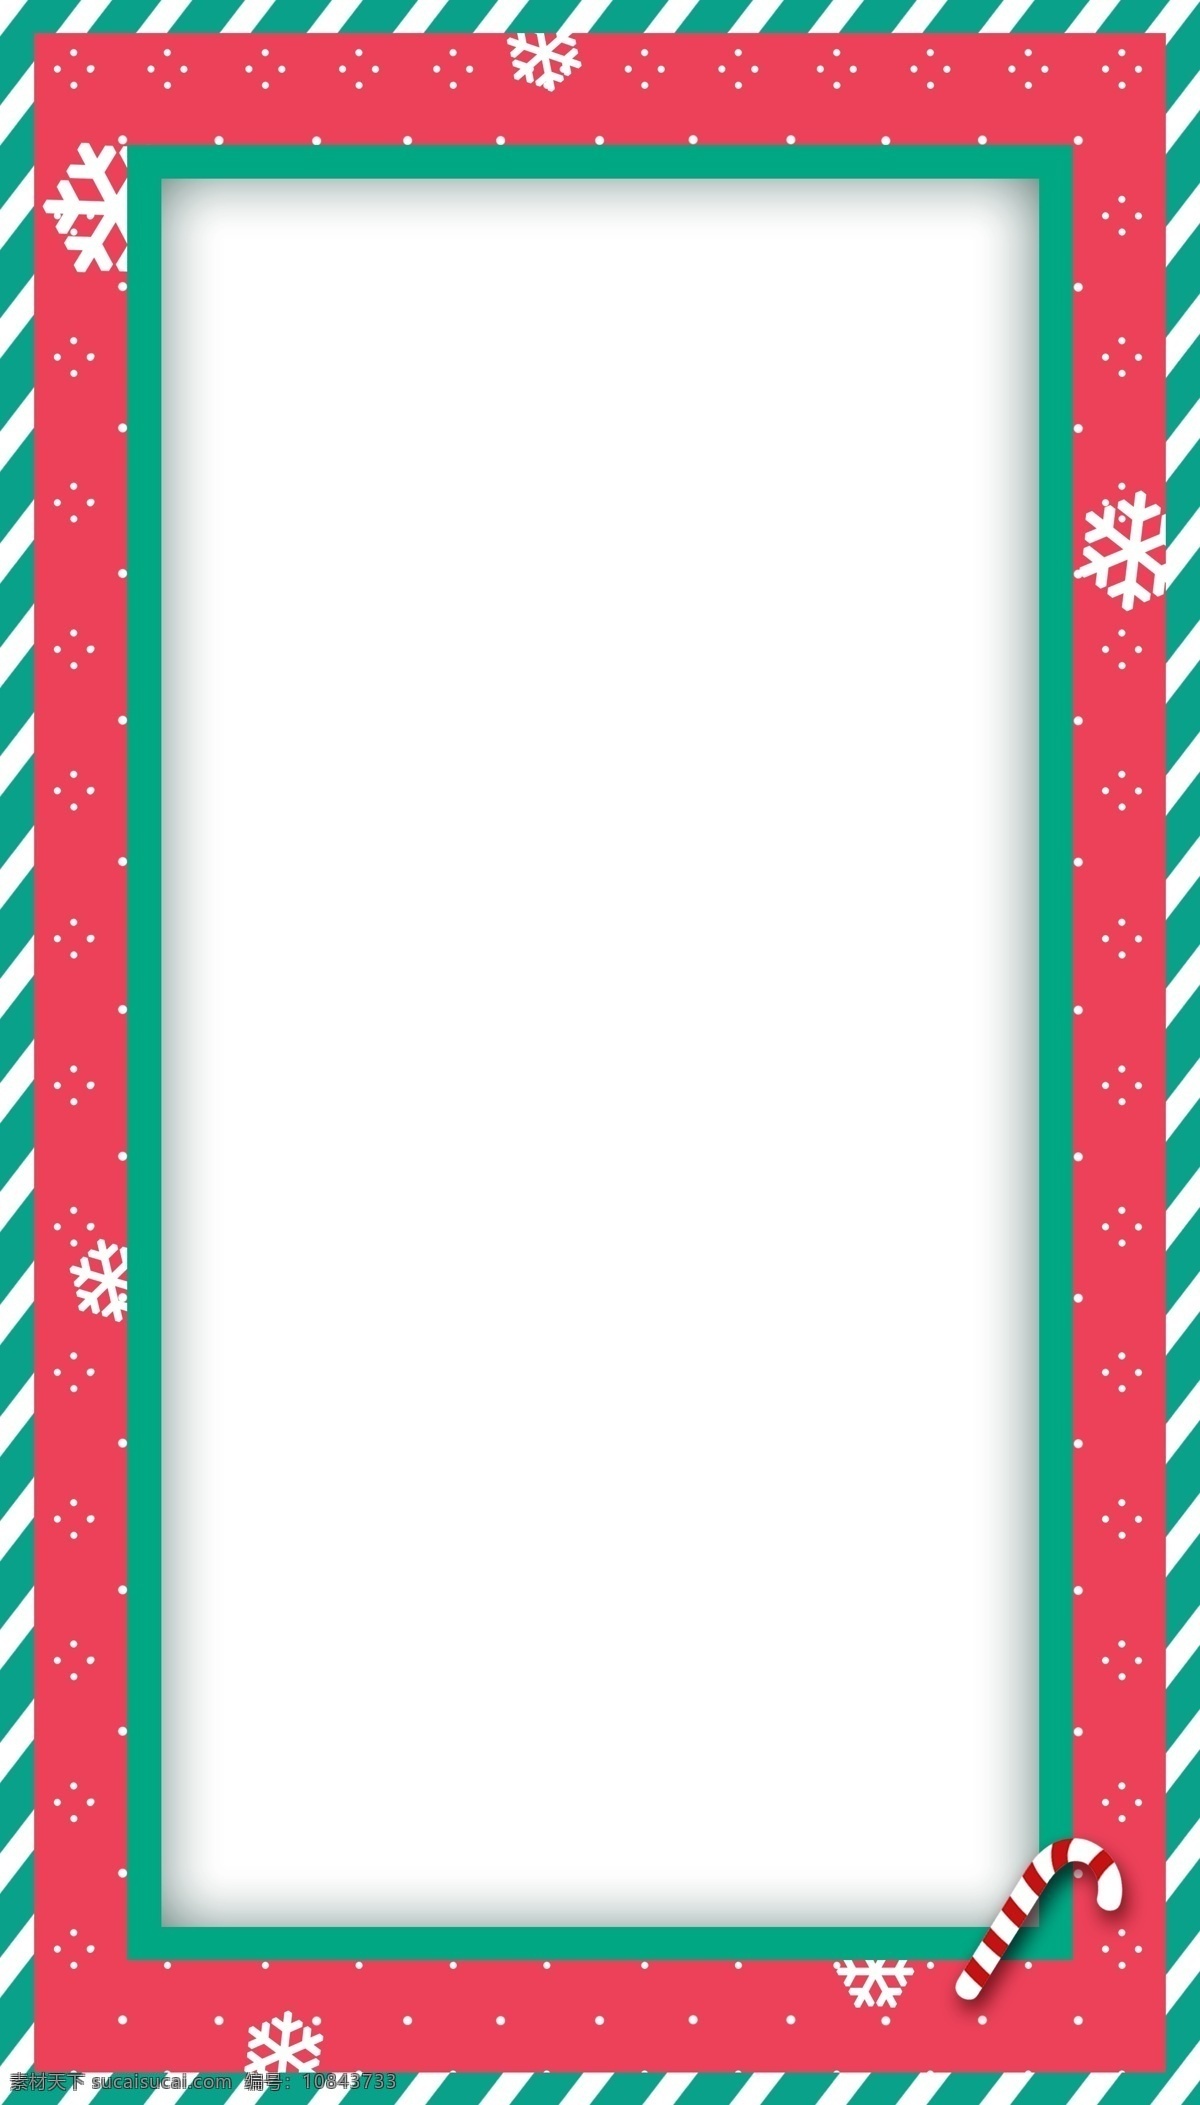 手绘 彩色 圣诞 边框 彩色边框 圣诞拐杖 圣诞雪花 红色 蓝色 圣诞边框 插画 雪花插画